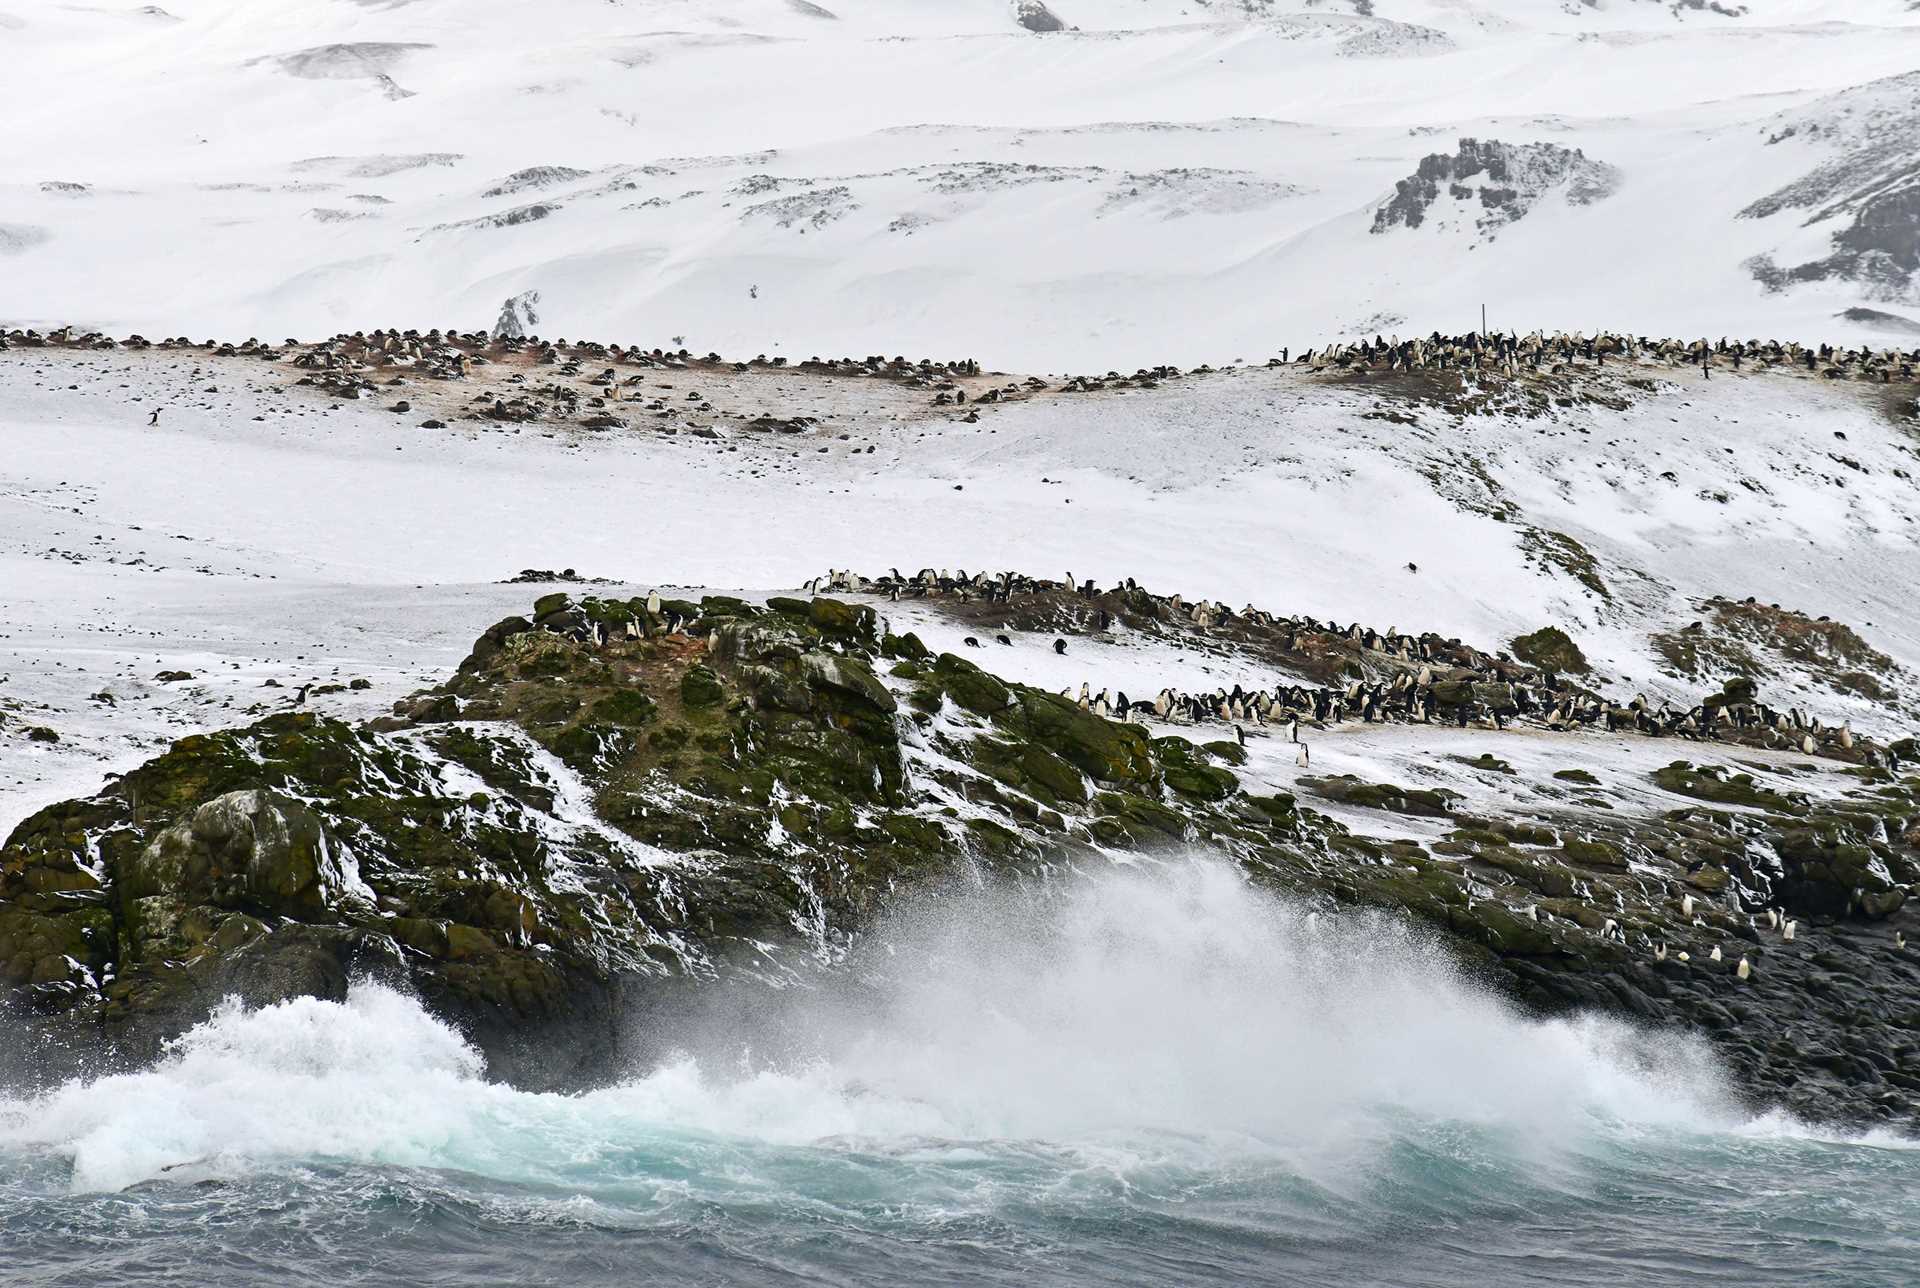 island full of penguins